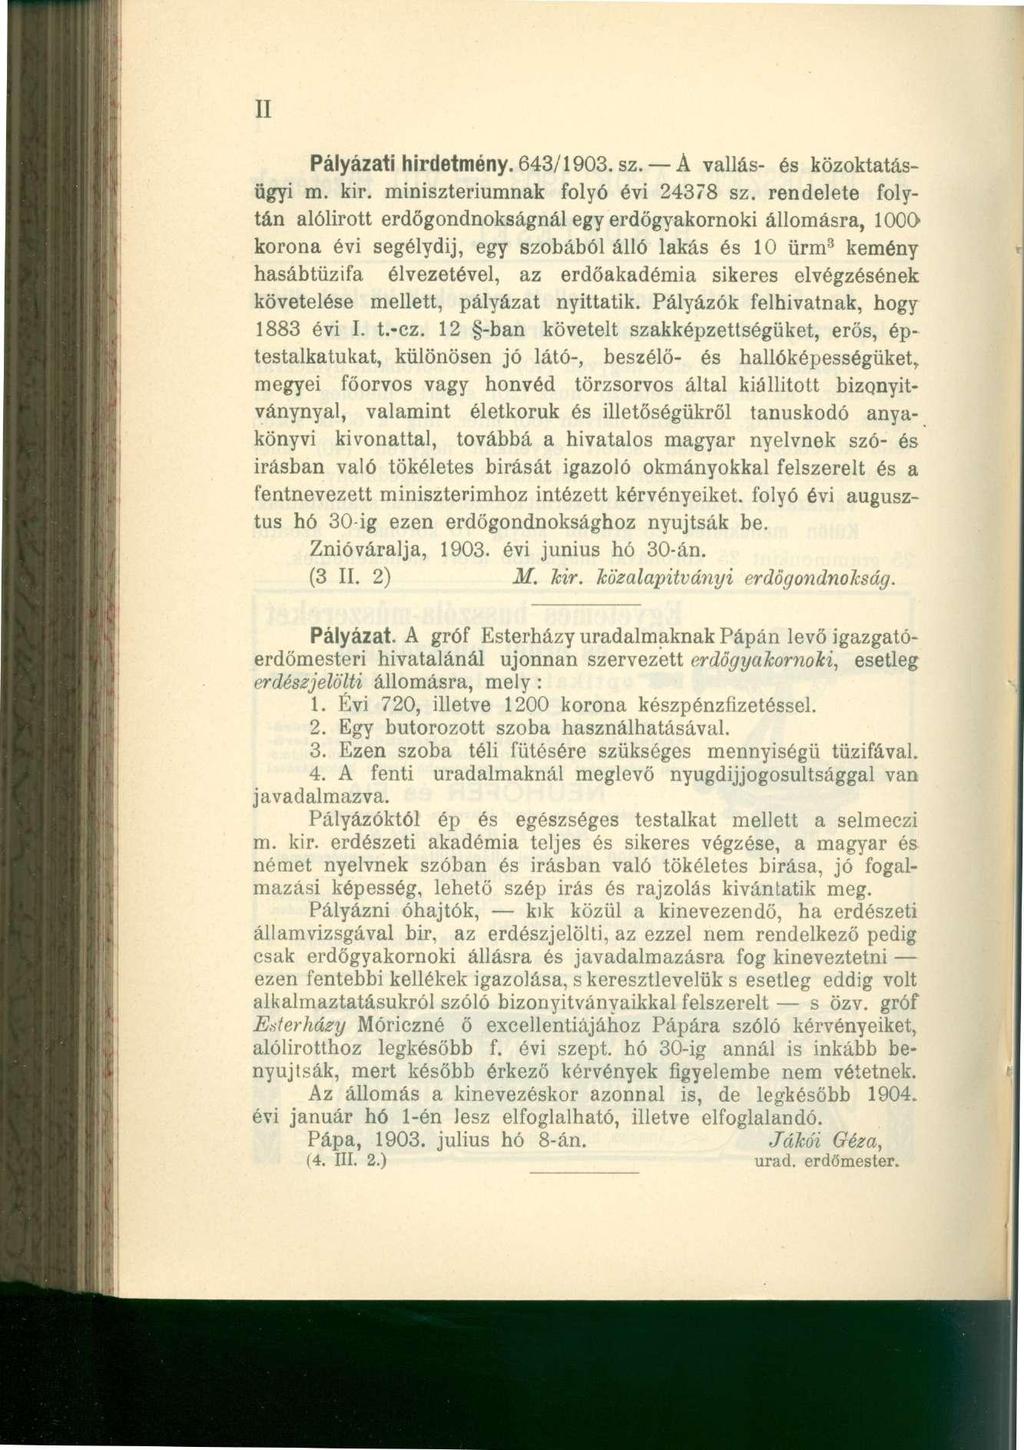 II Pályázati hirdetmény. 643/1903. sz. A vallás- és közoktatásügyi m. kir. minisztériumnak folyó évi 24378 sz.